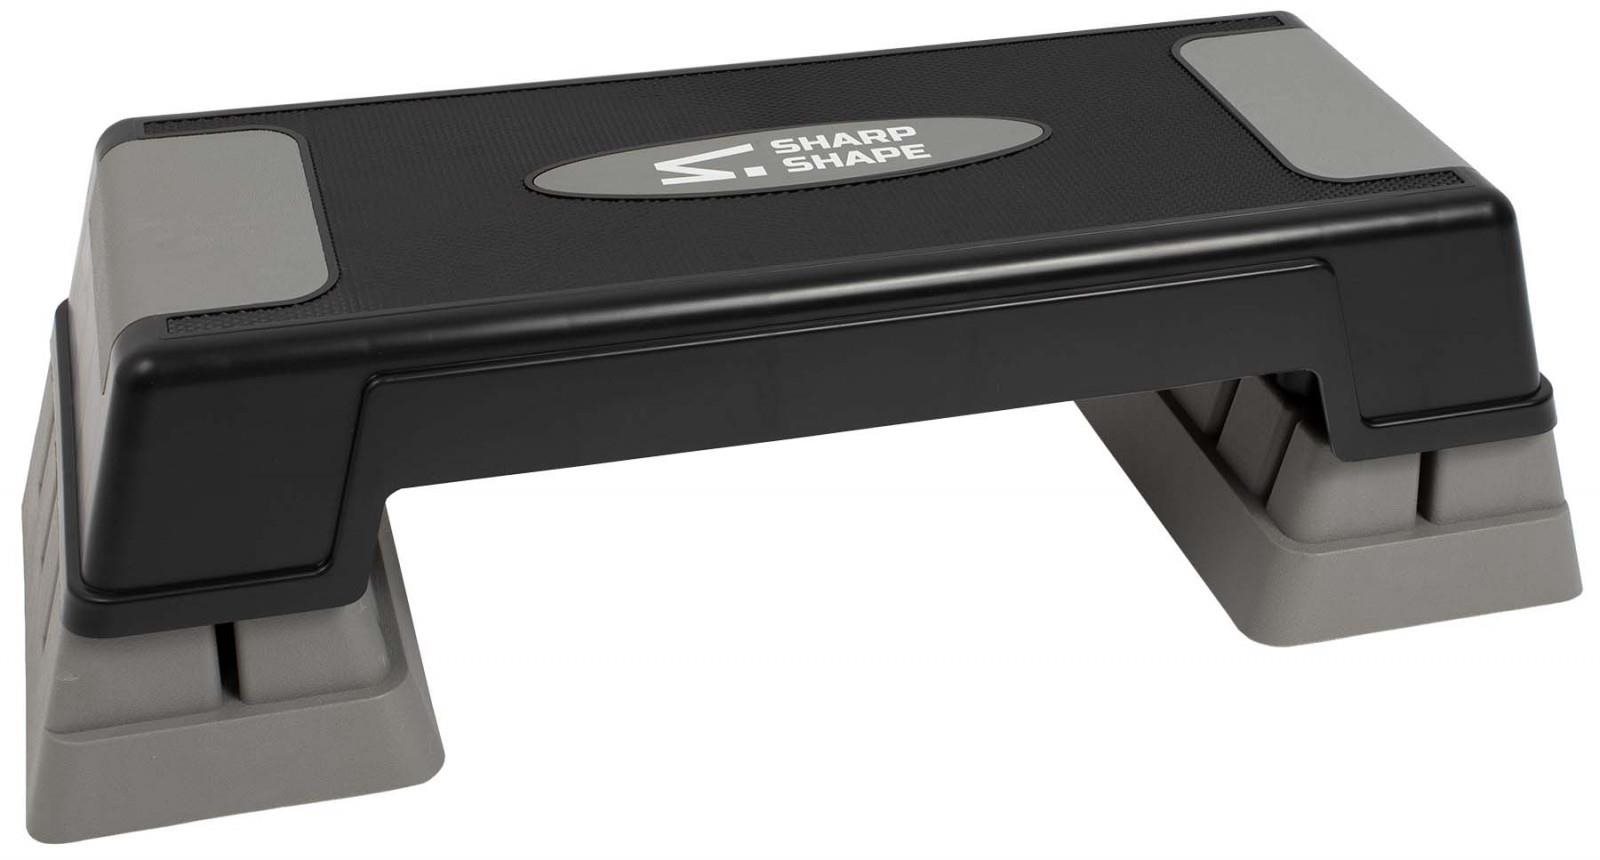 Sharp Shape Aerobic step SH200